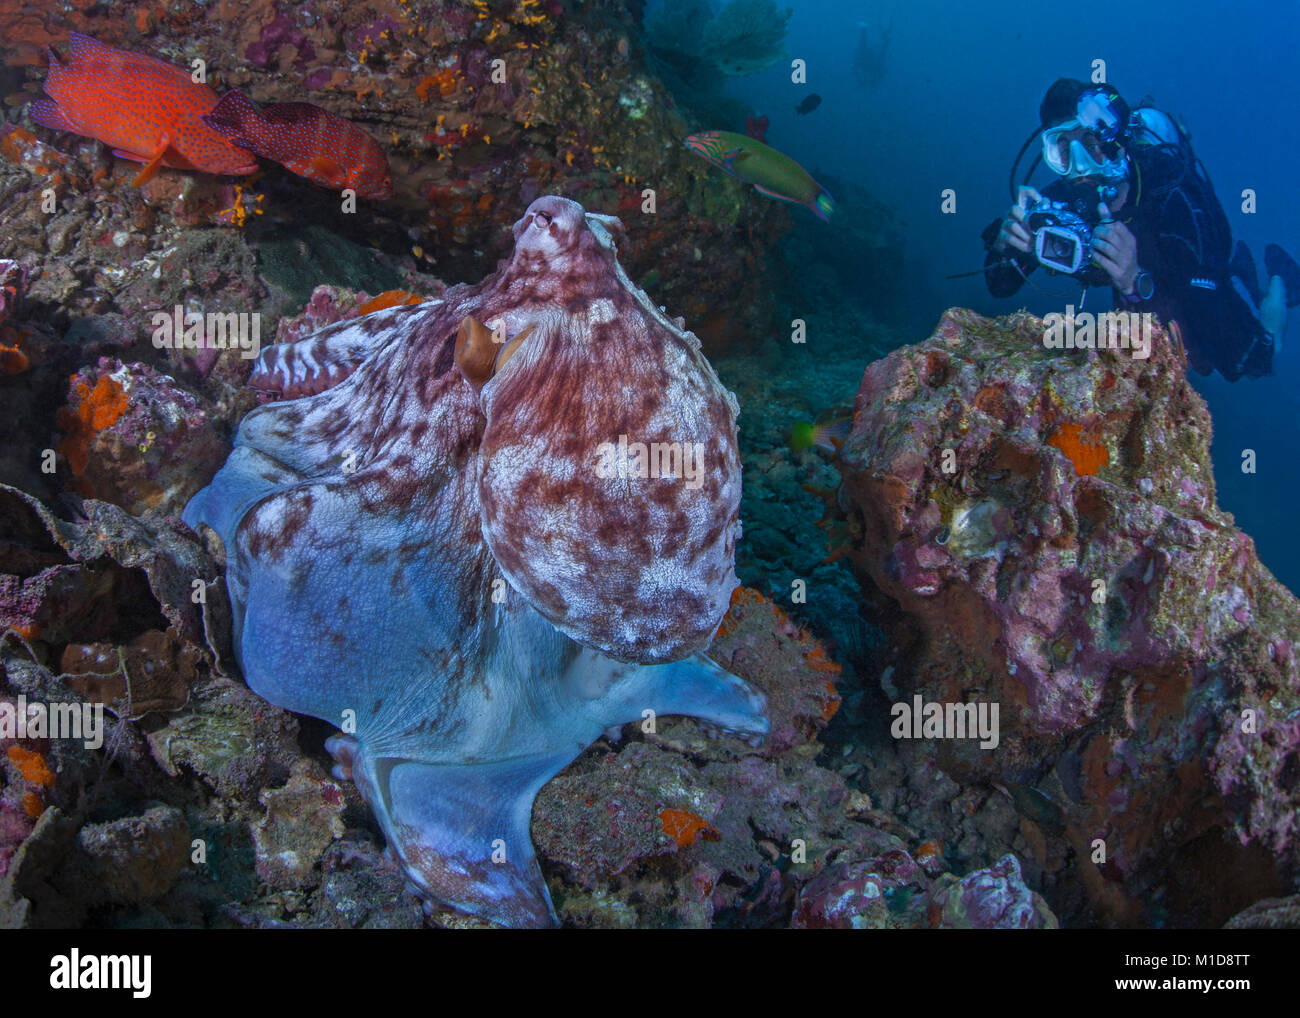 Scuba Diver tente d'obtenir un portrait photo d'une grande pieuvre sur mer.. Richelieu Rock, la mer d'Andaman. La Thaïlande. Banque D'Images